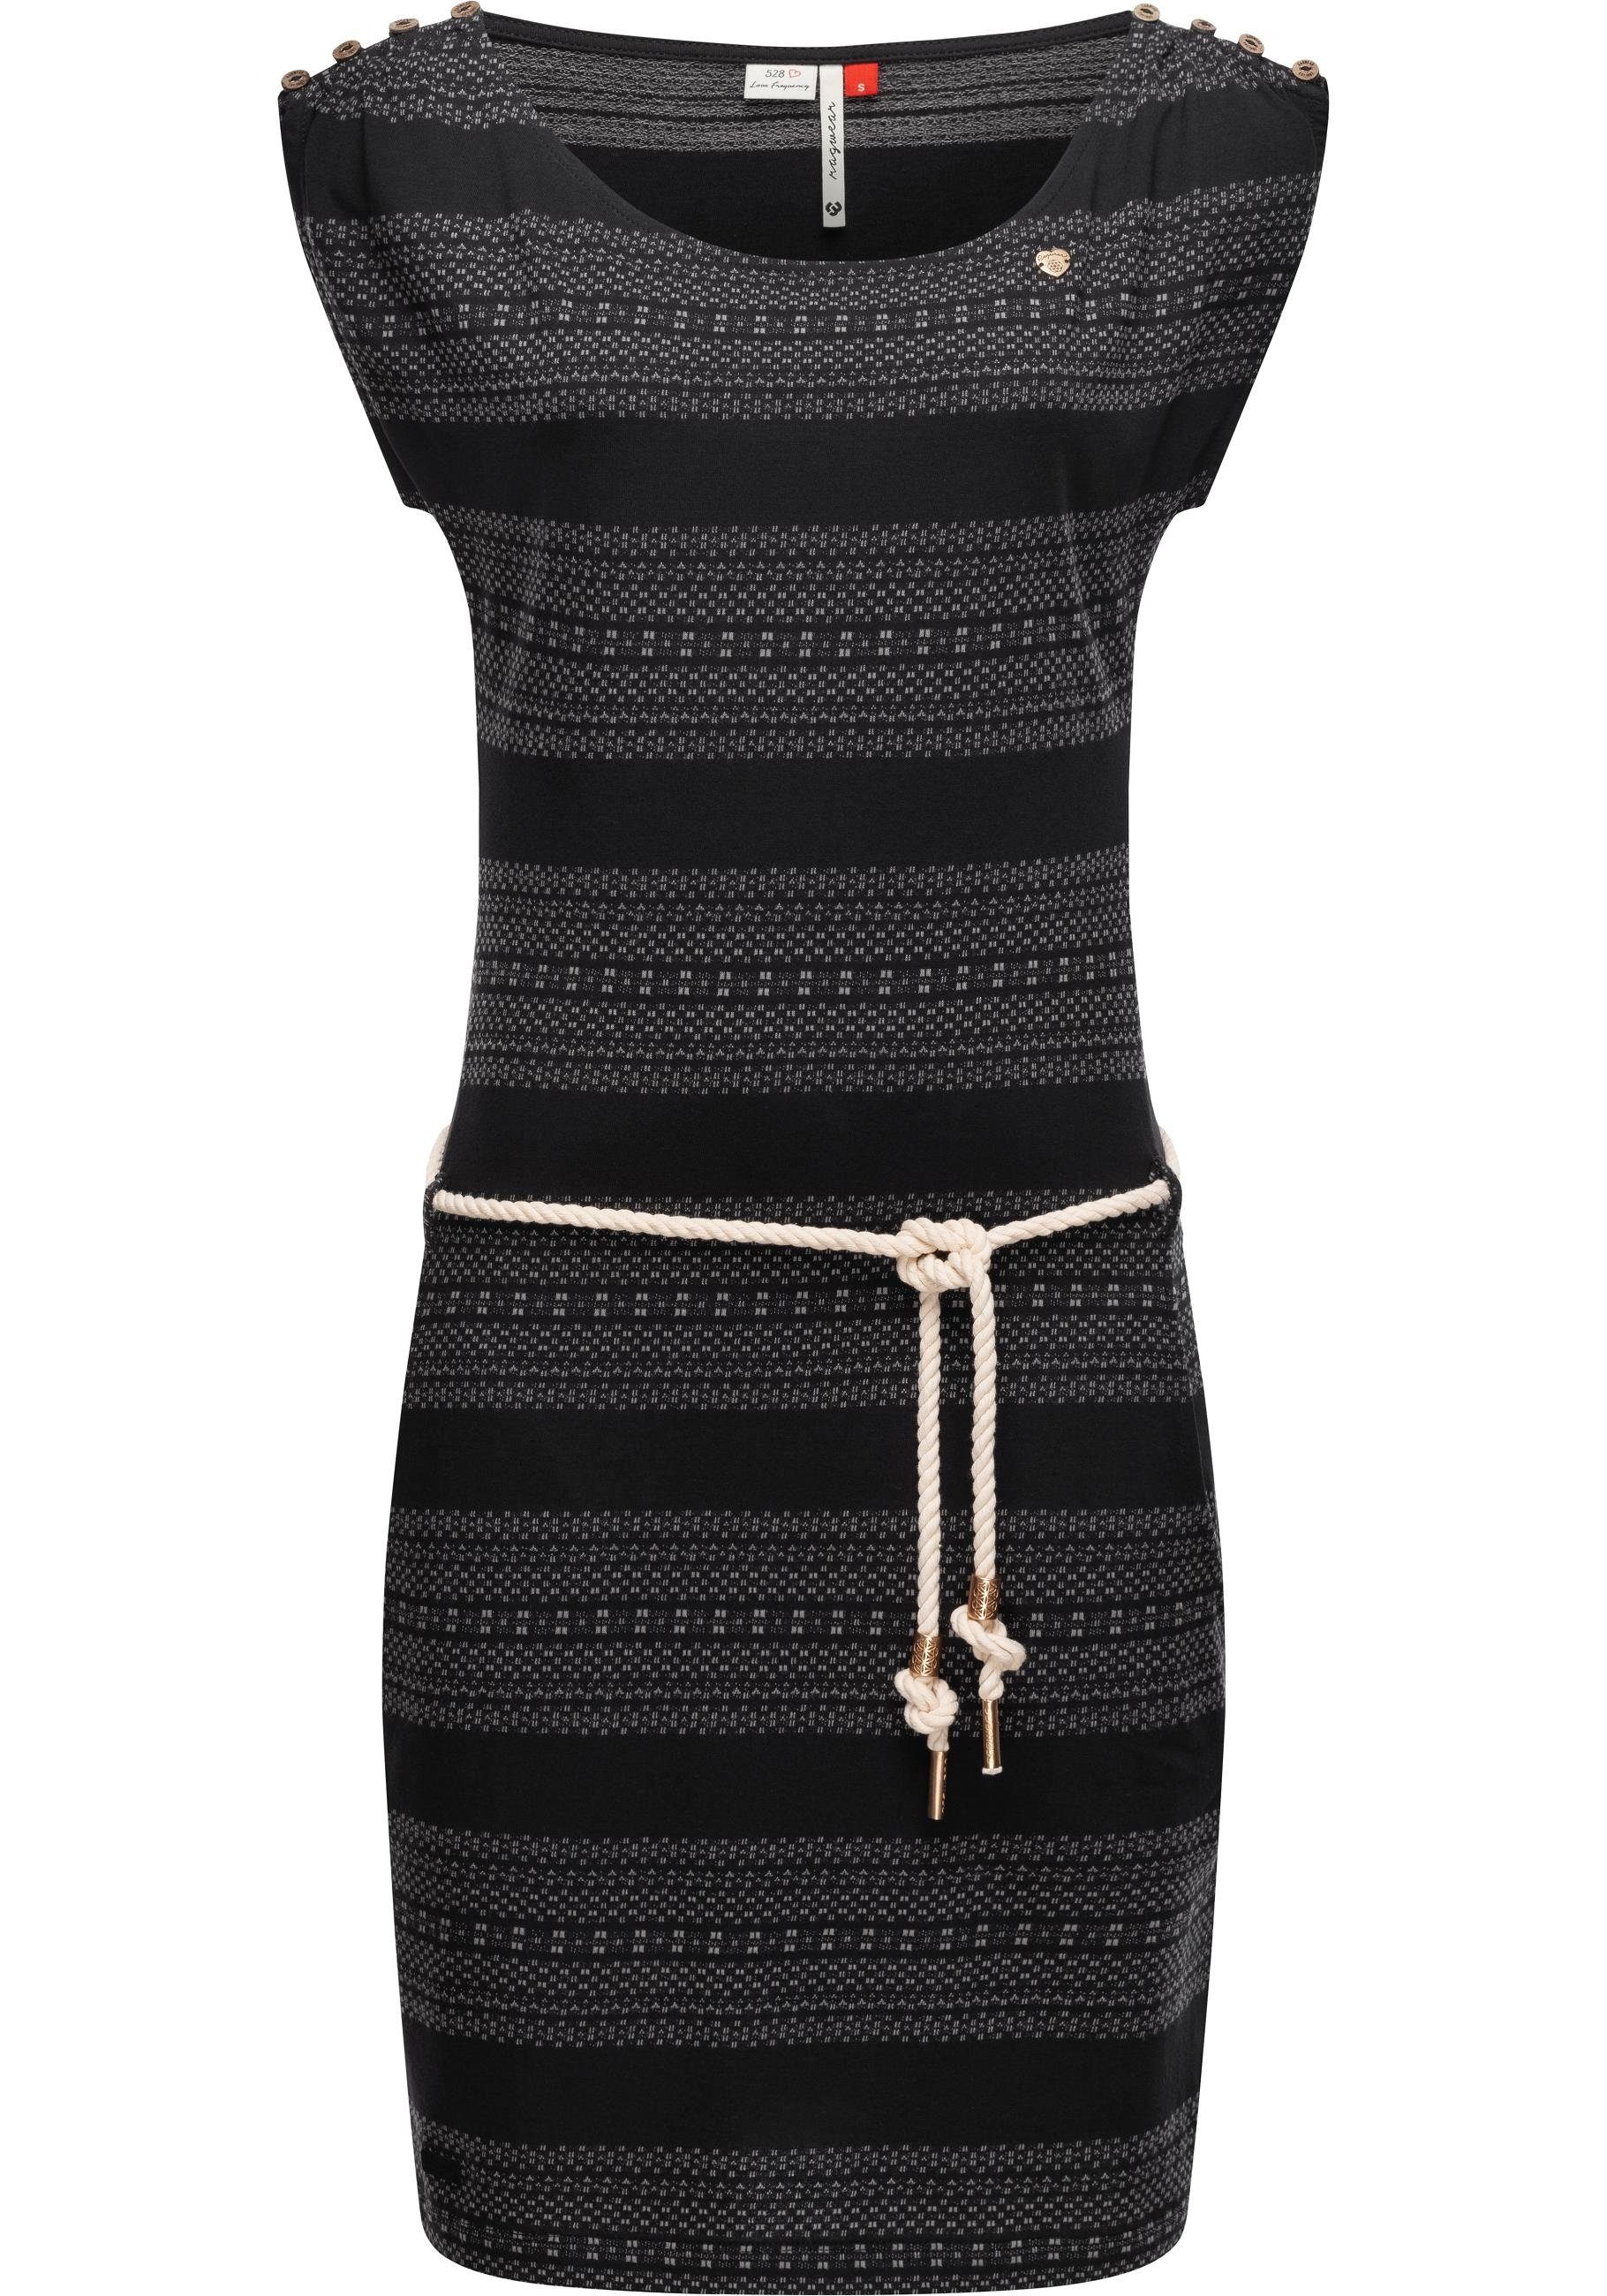 Ragwear Shirtkleid Chego stylisches Sommerkleid schwarz mit Bindeband